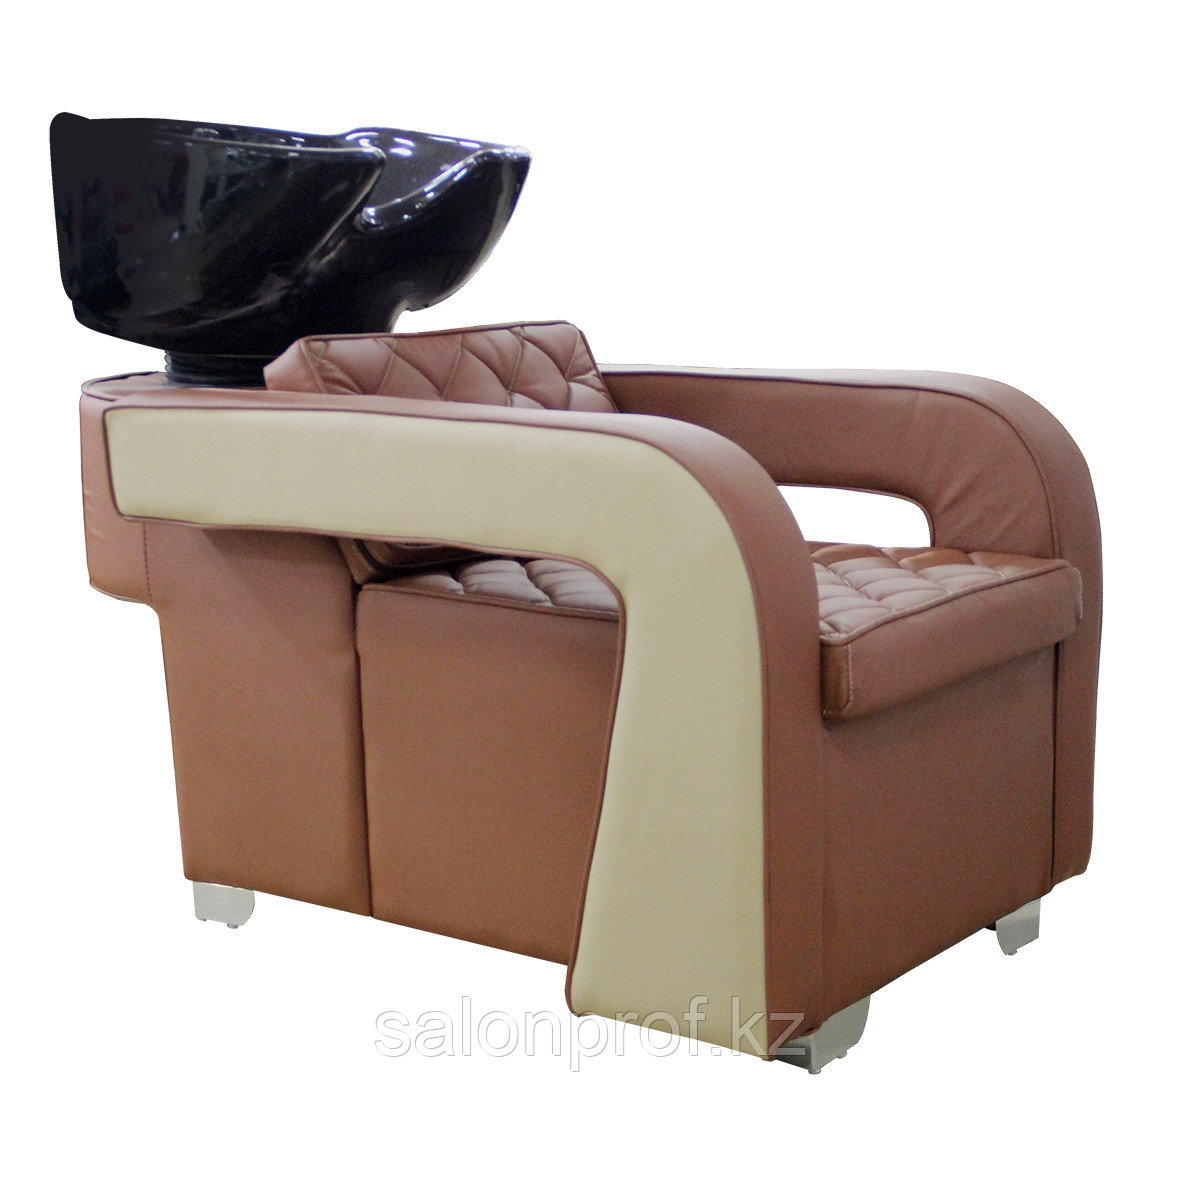 AS-6011 Мойка парикмахерская с креслом (коричнево-бежевая, гладкая)